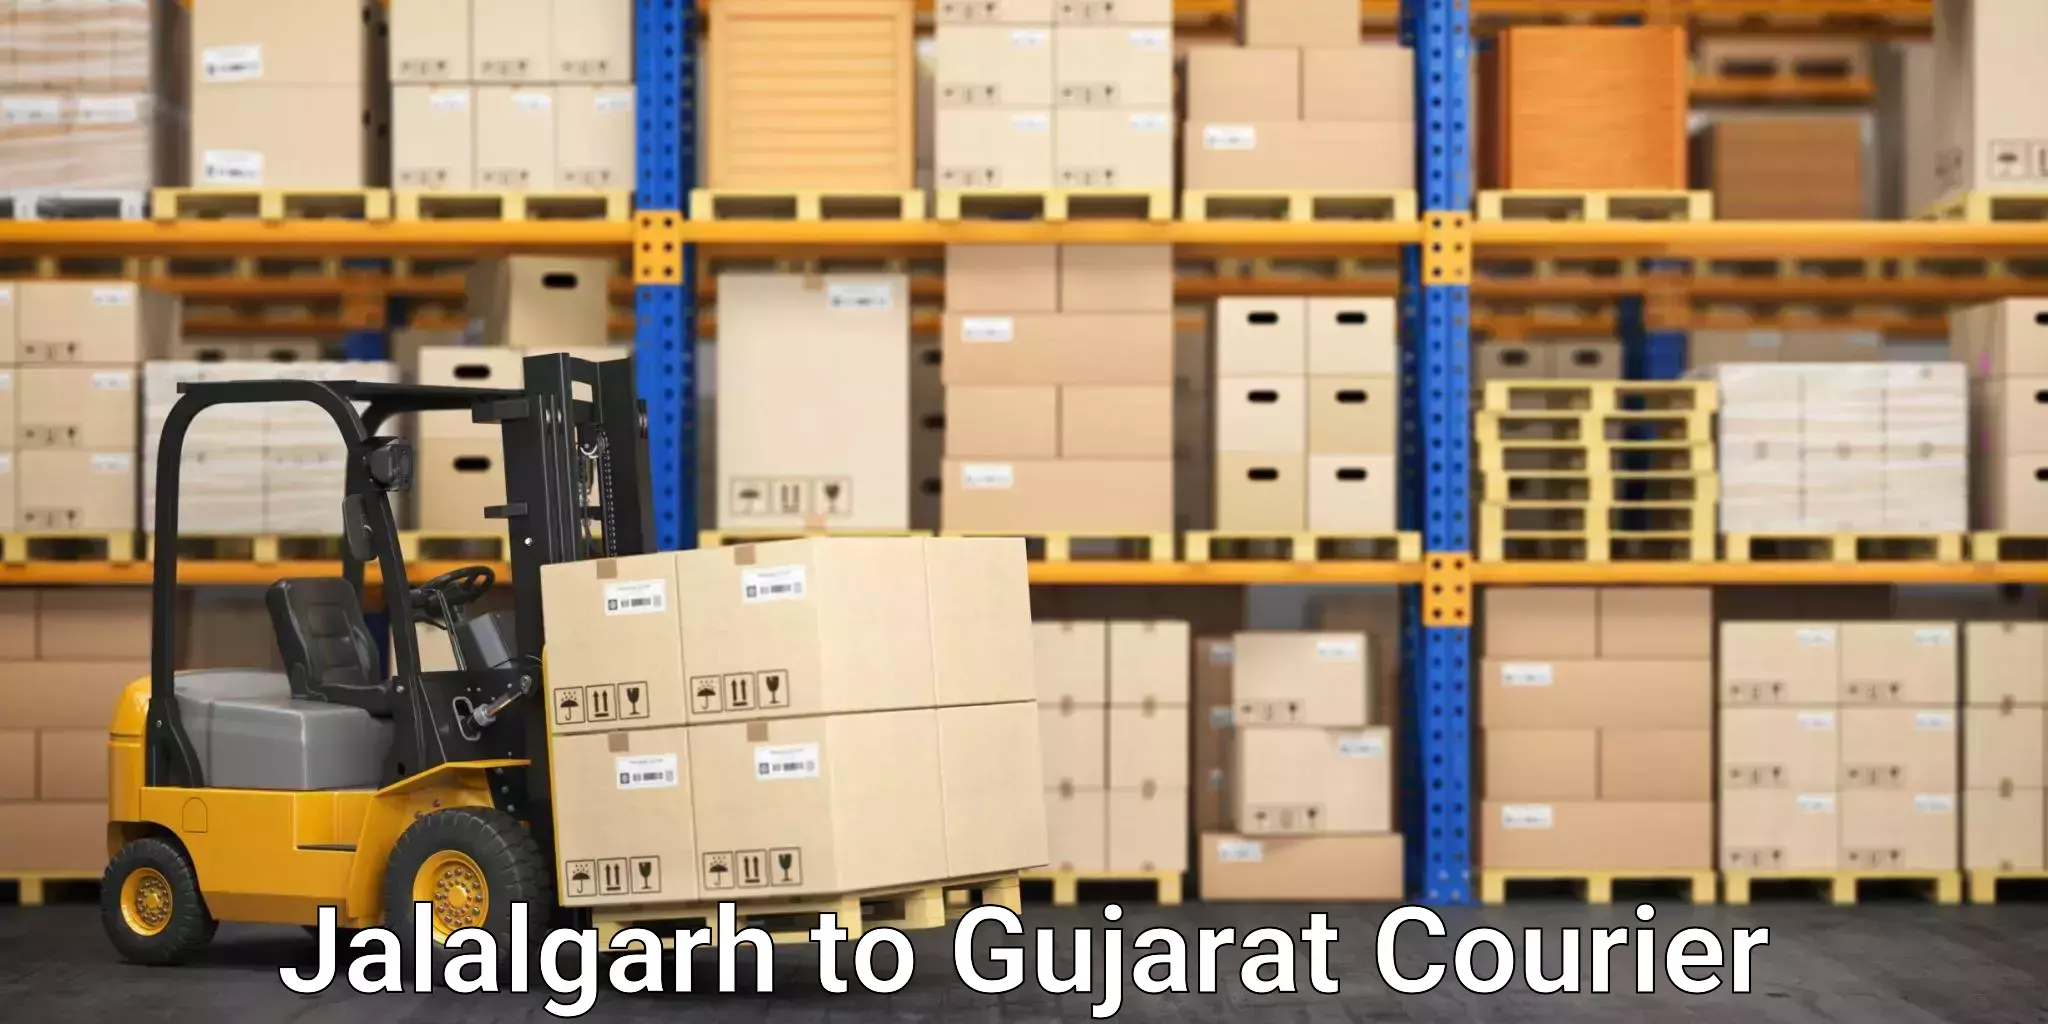 Furniture moving experts Jalalgarh to Gujarat